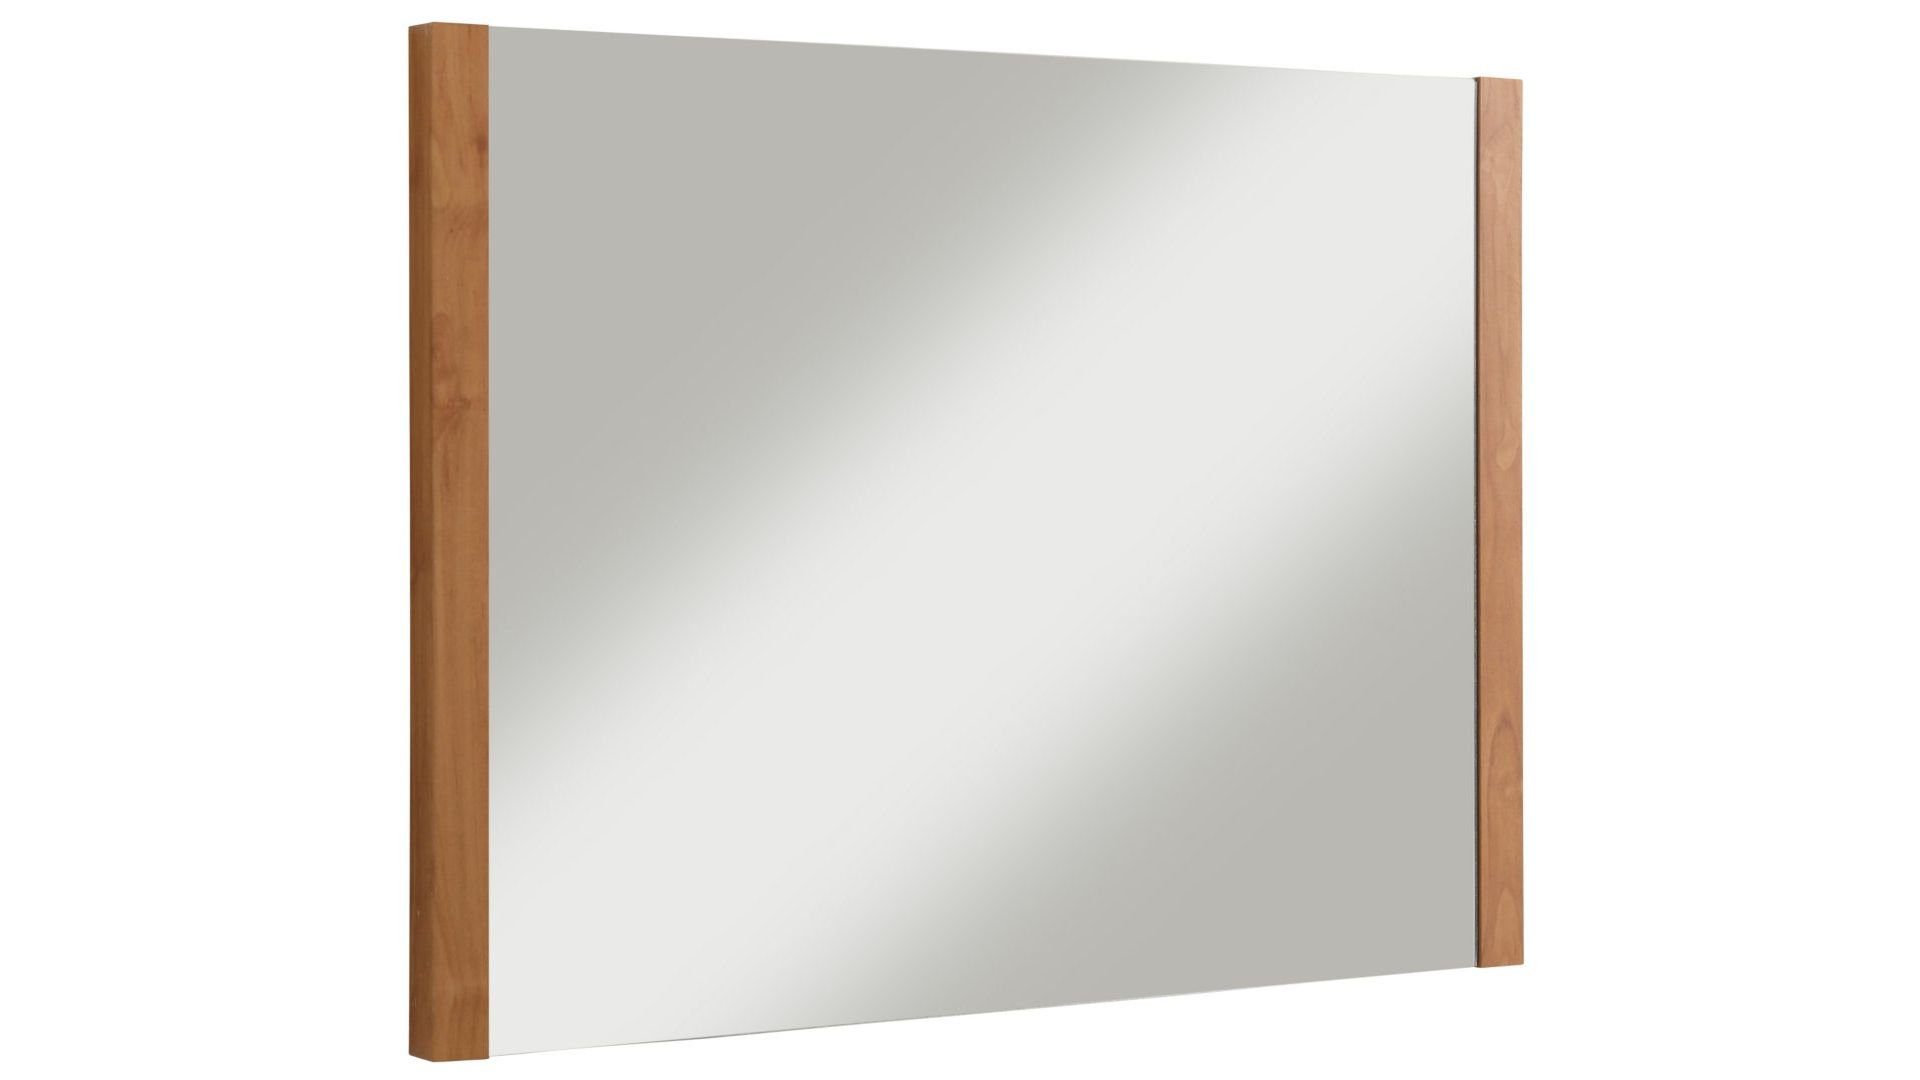 loft24 Wandspiegel Chicky, Hängespiegel, gerahmt, schöne Holzoptik in ahornfarben, 80x60 cm